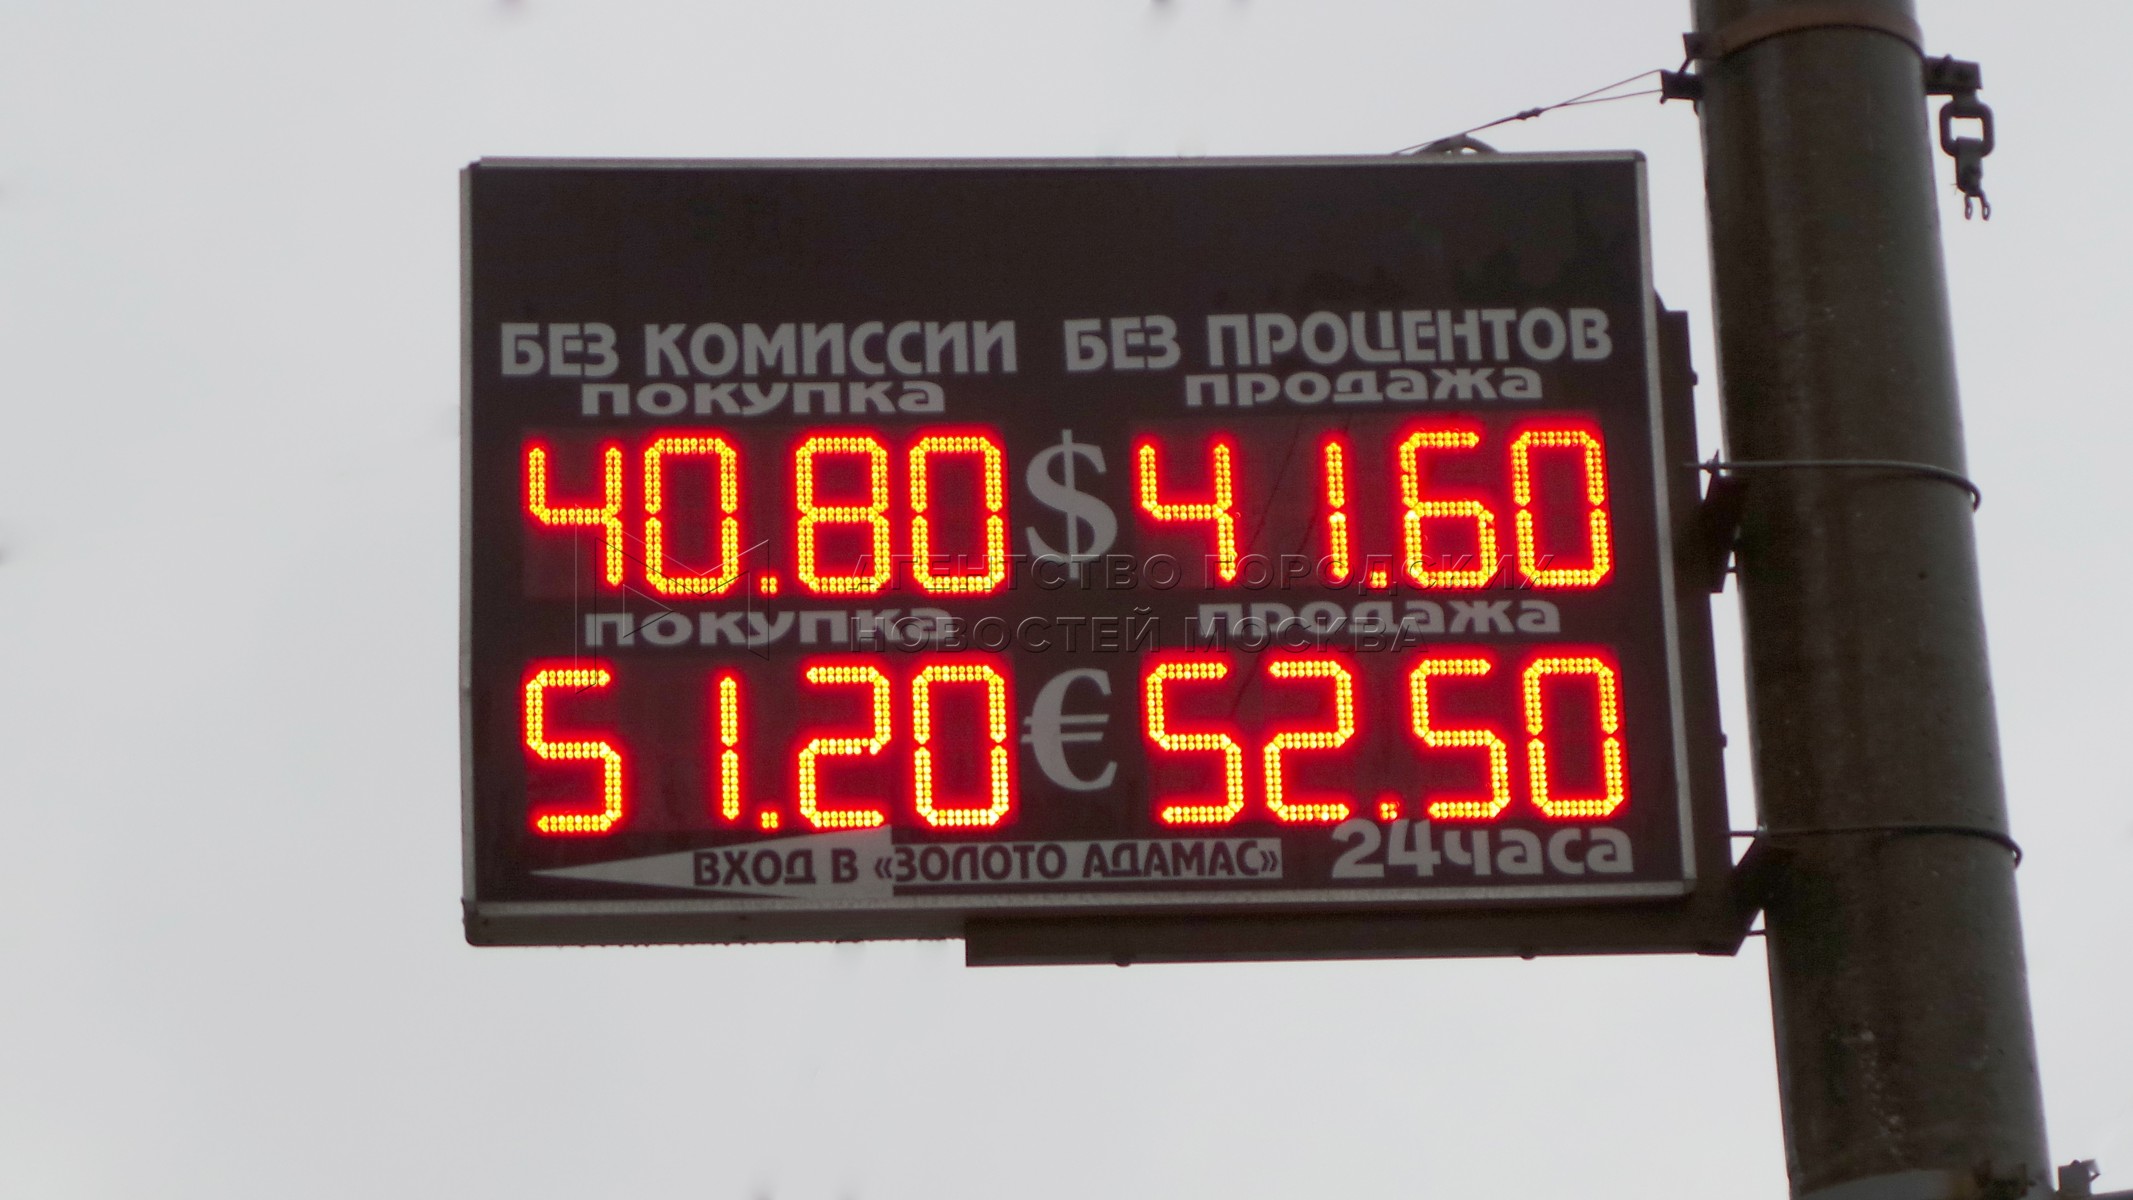 Кантемировская обмен валюты биржа переводов